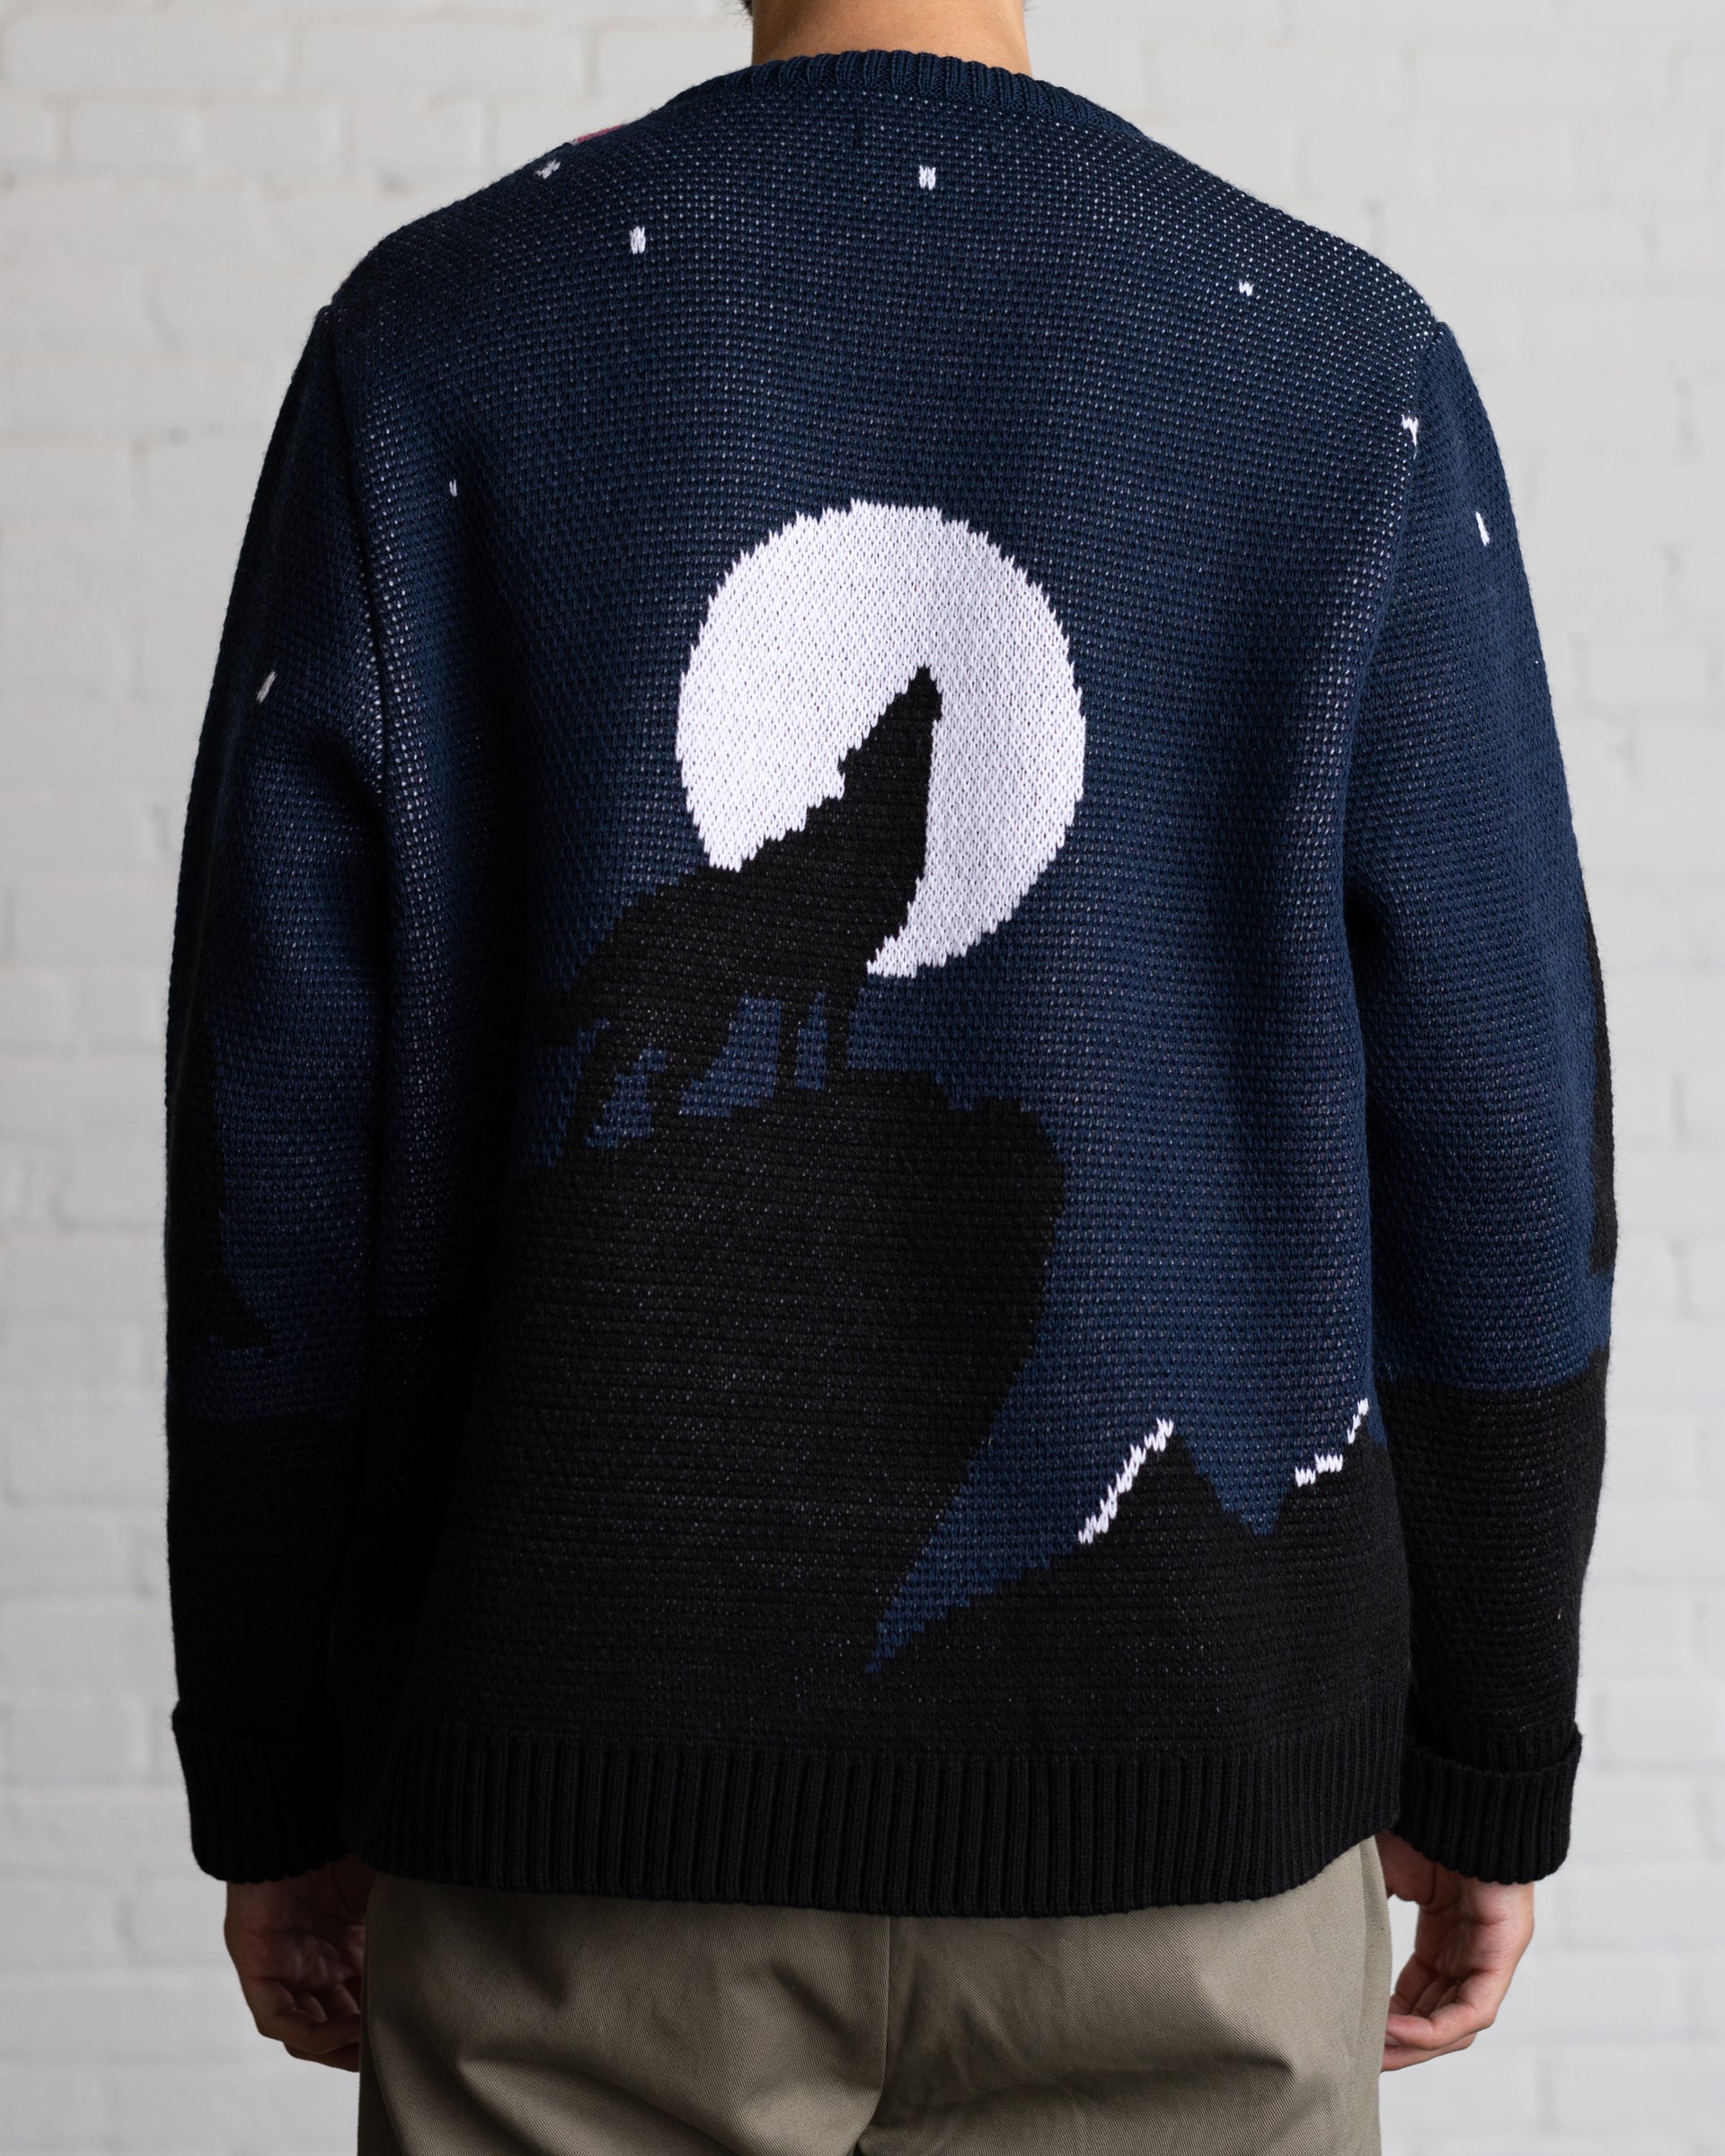 Aurora Jacquard Knit Sweater - Midnight